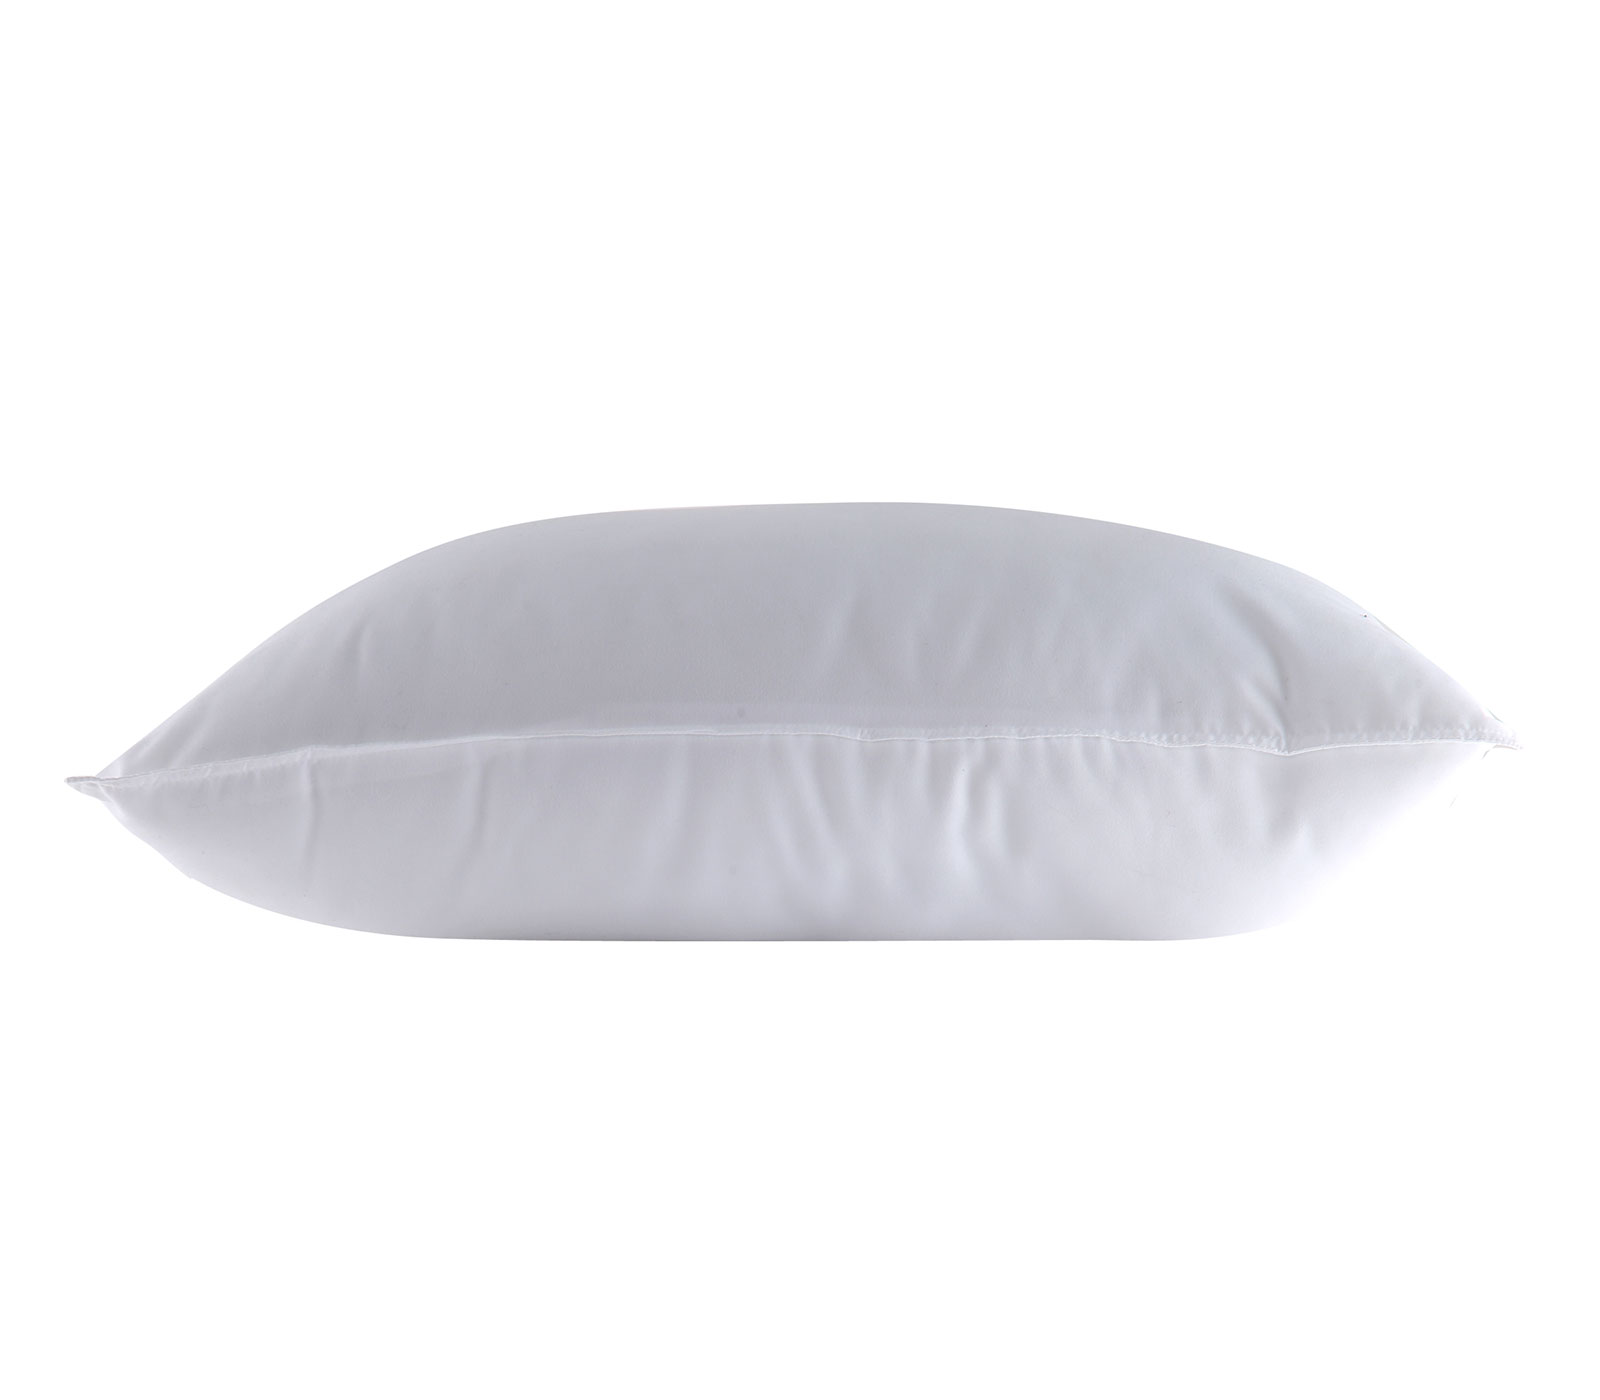 Μαξιλάρι Ύπνου Nef-Nef New Cotton Pillow Μαλακό 50Χ70